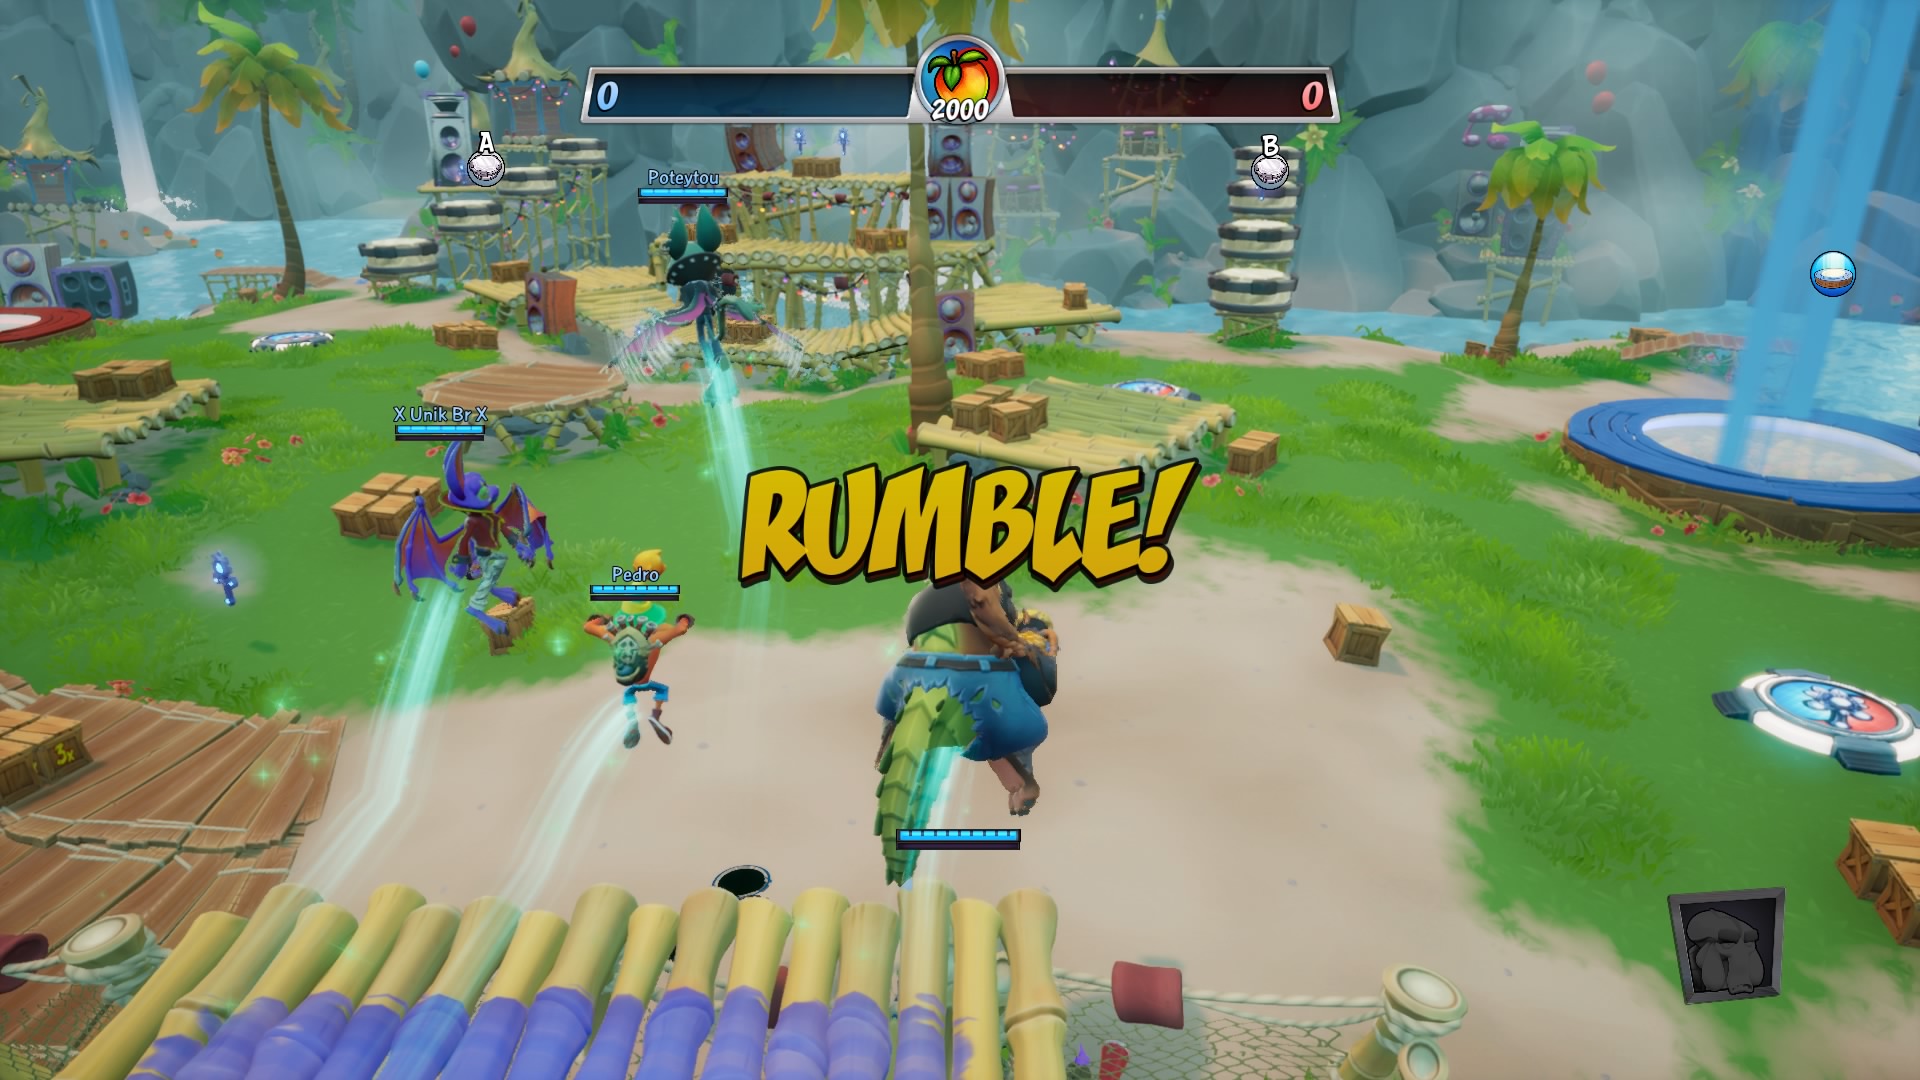 Crash Team Rumble é um divertido jogo sem futuro